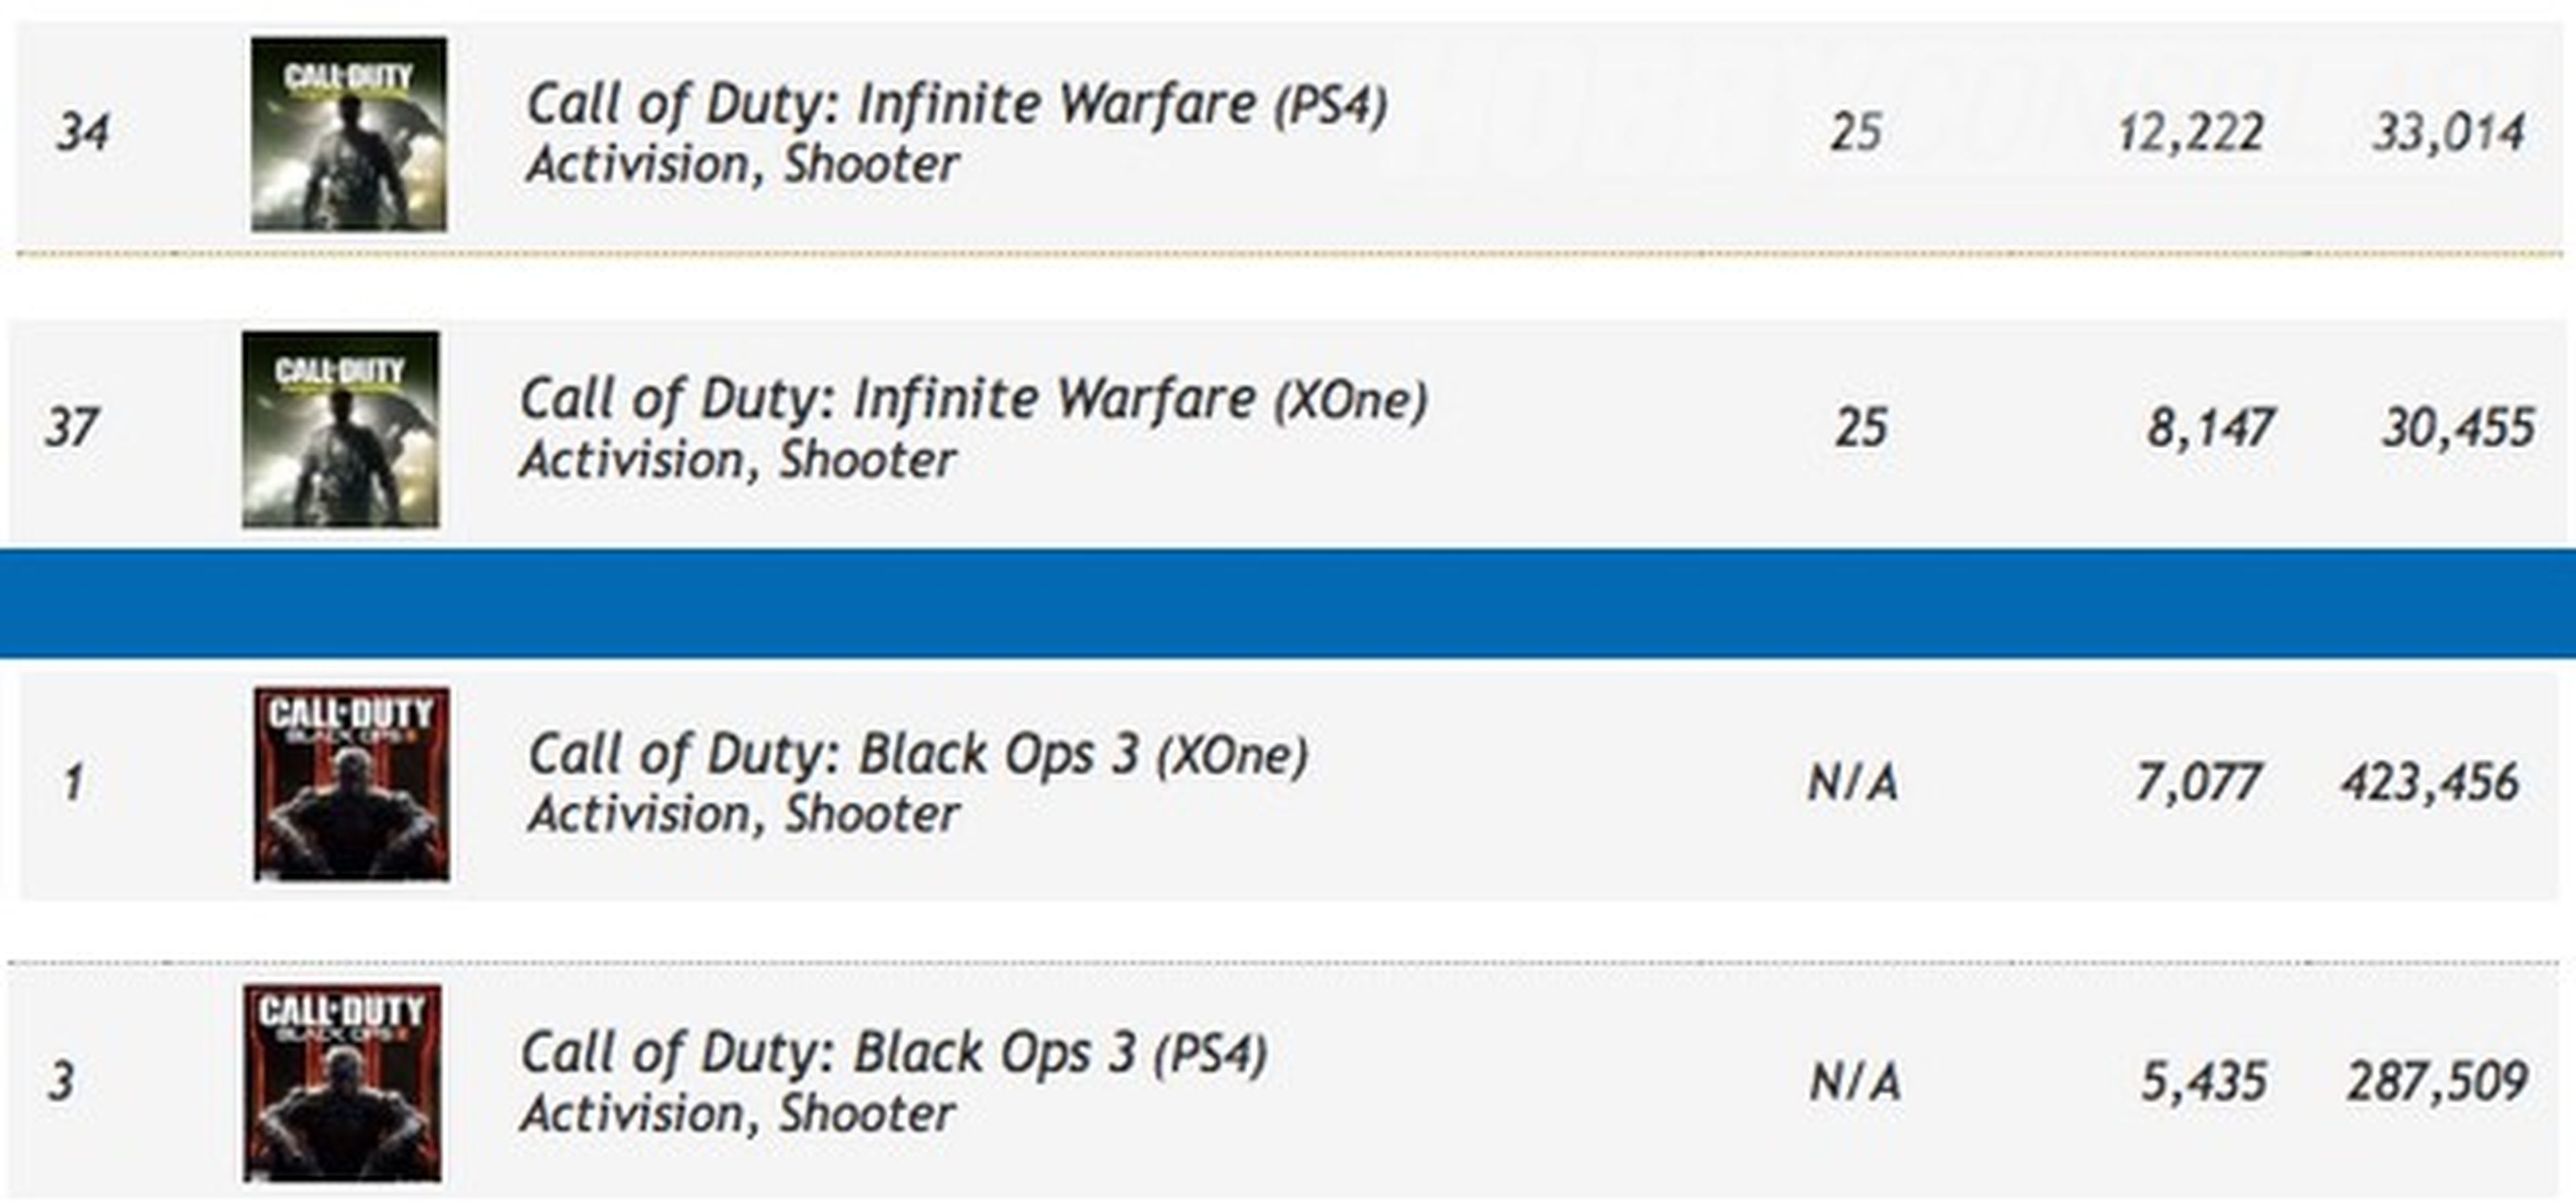 Call of Duty Infinite Warfare - Las reservas son extremadamente bajas